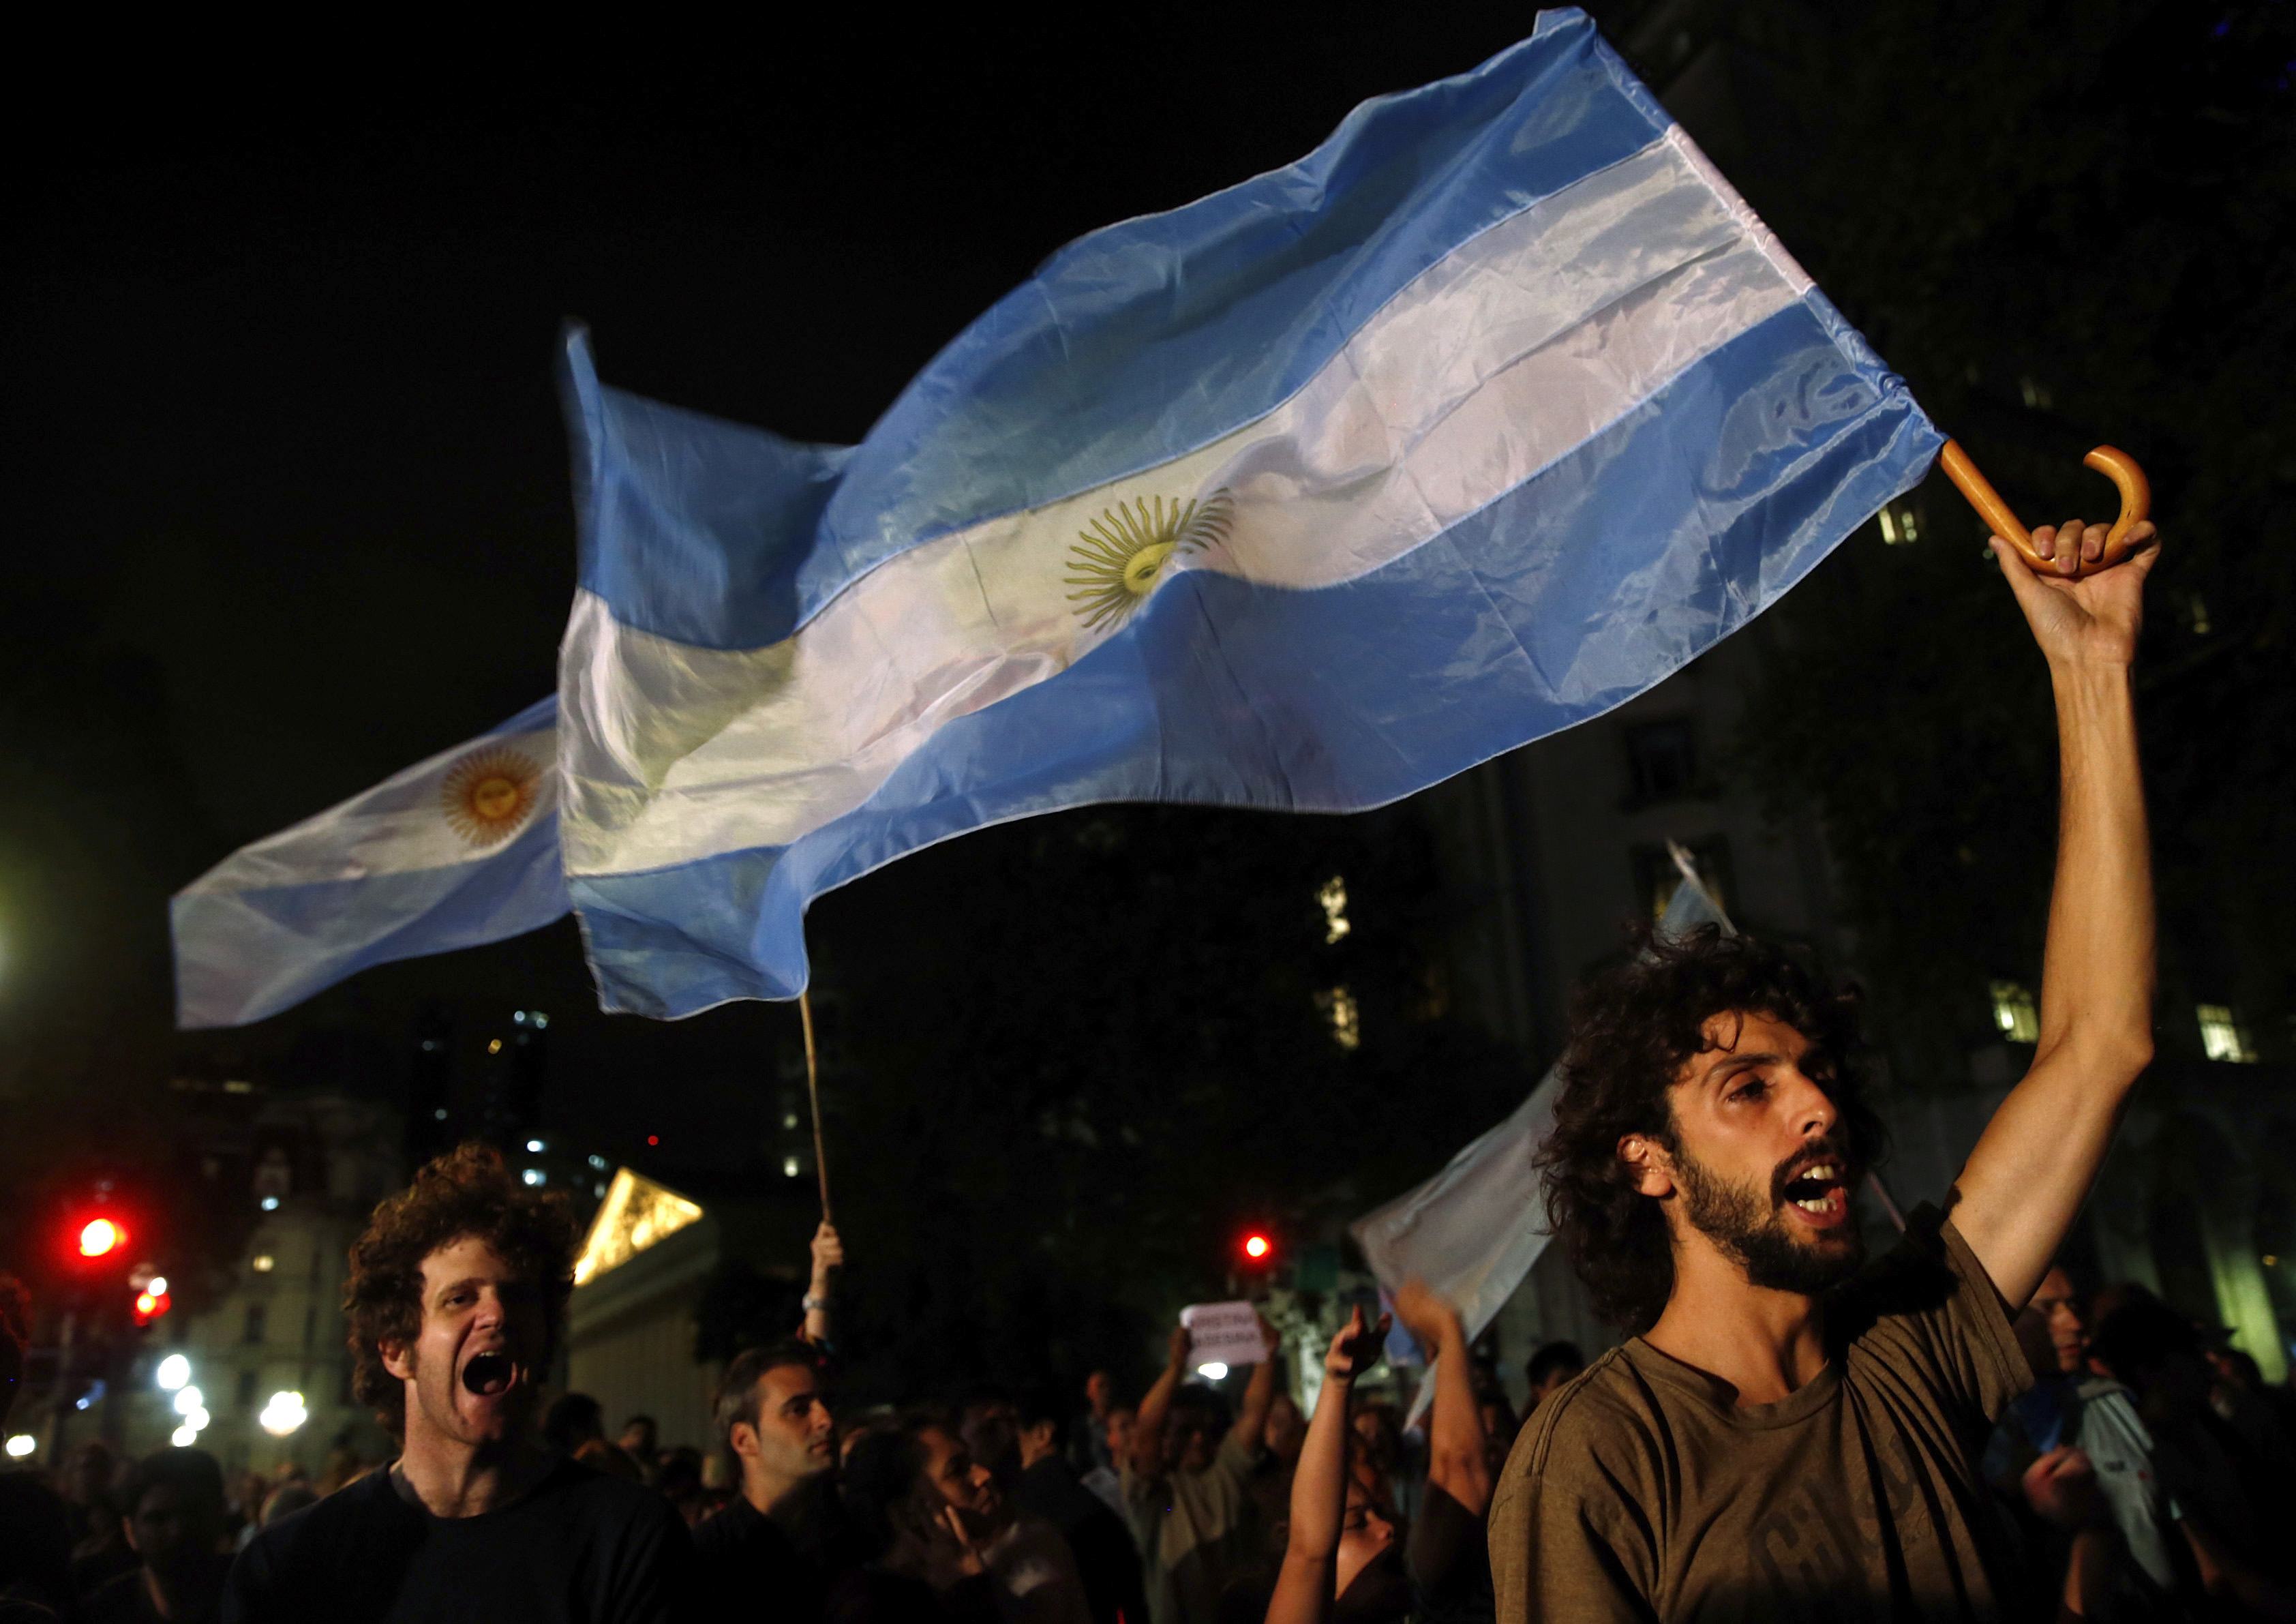 La muerte de Nisman saca a Argentina a la calle para pedir verdad y justicia